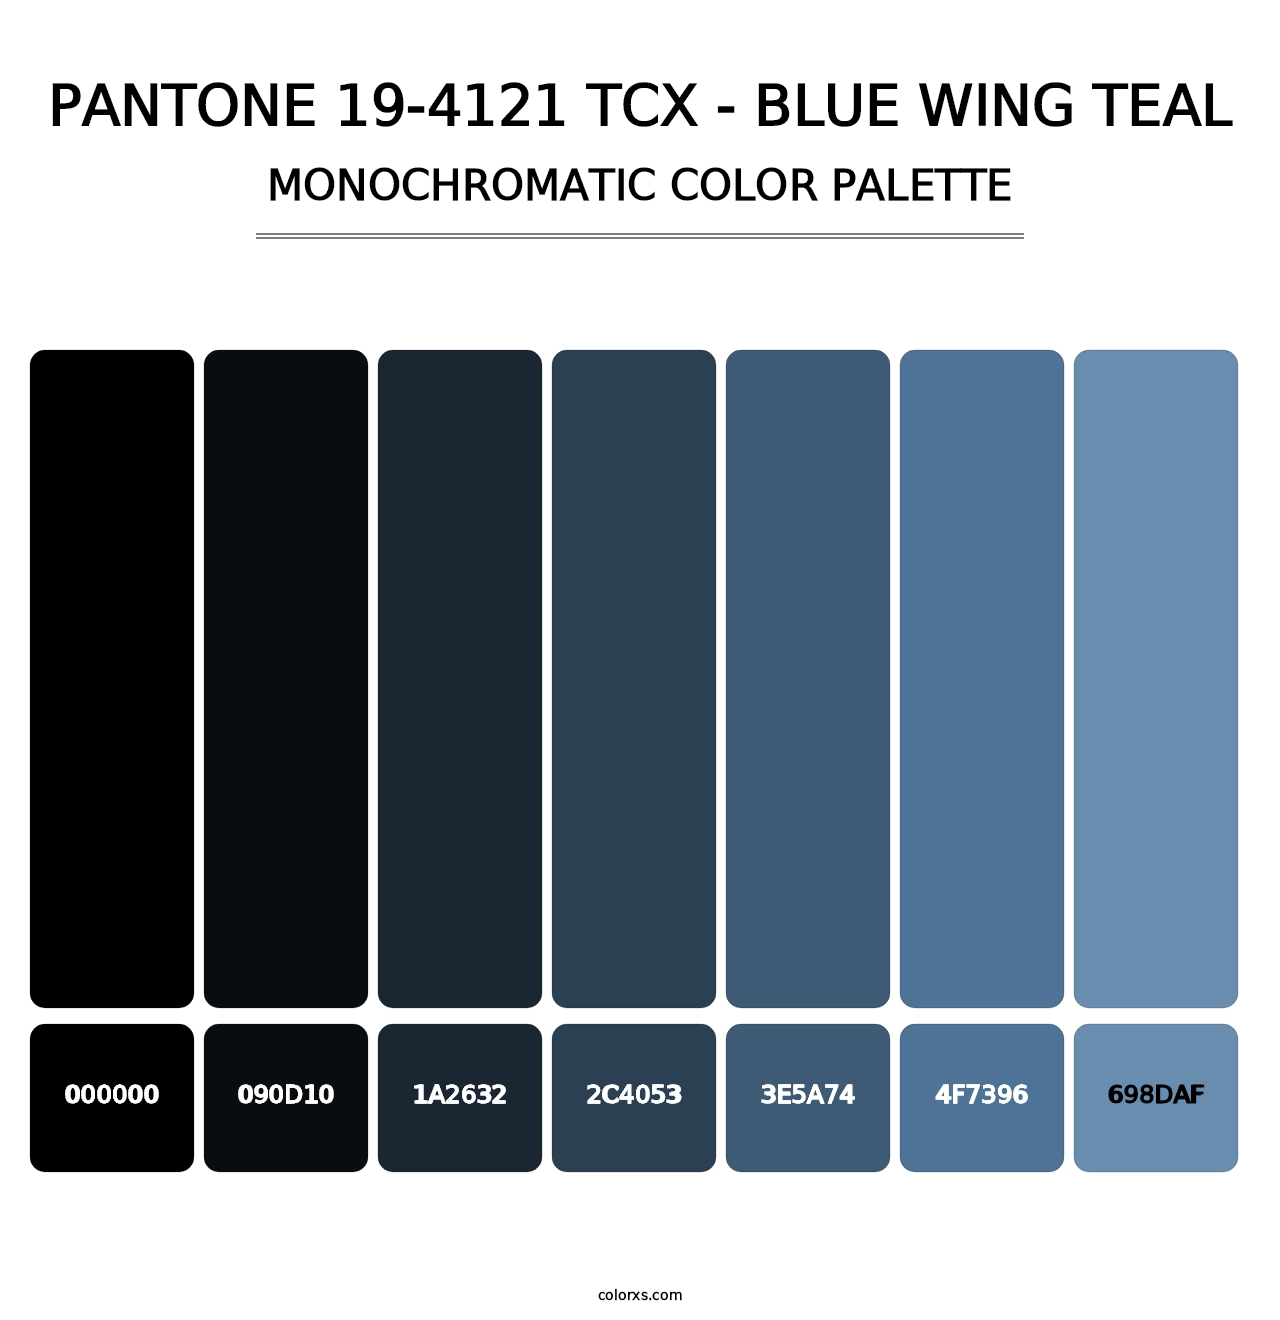 PANTONE 19-4121 TCX - Blue Wing Teal - Monochromatic Color Palette